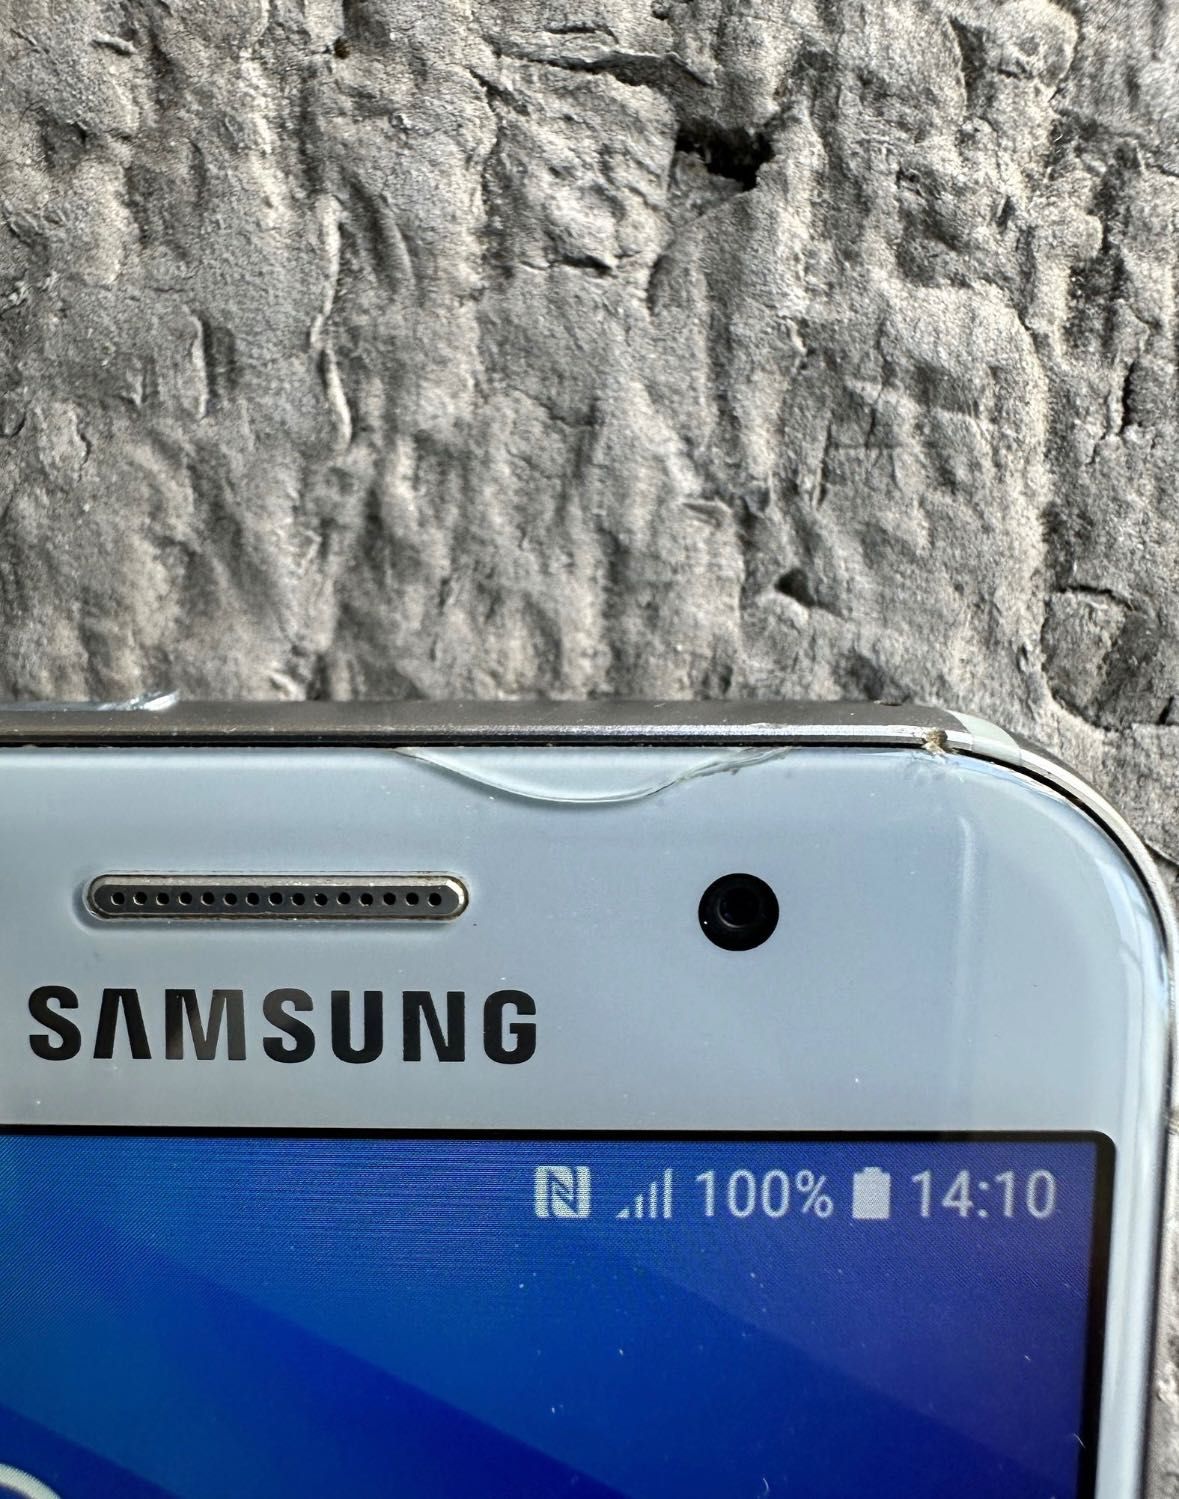 Samsung A3 2017 telefon smartphone